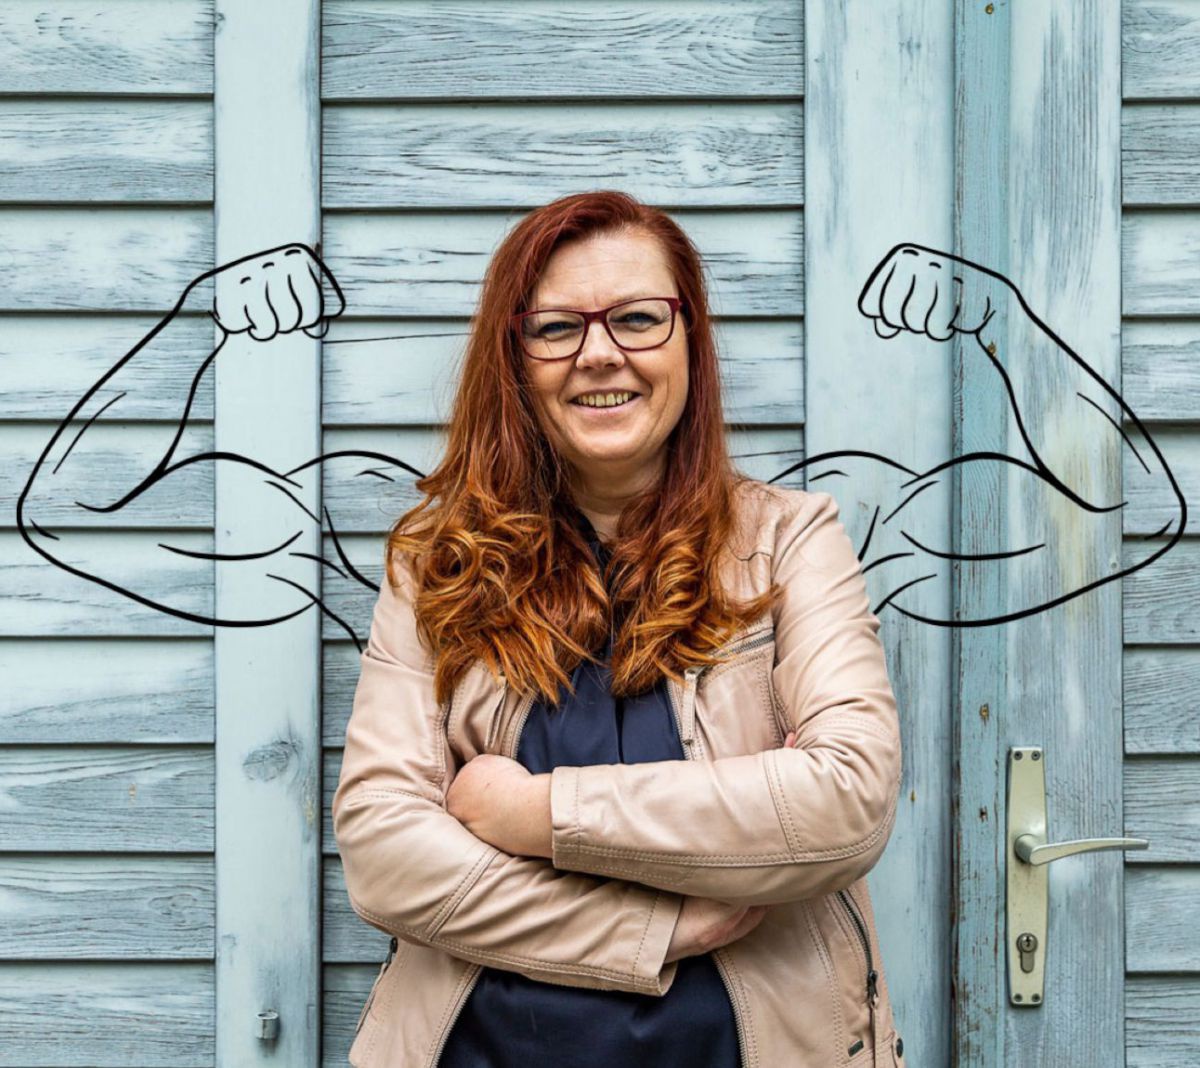 Foto der Autorin Ingeborg Kuca. Sie steht mit verschränkten Armen lächelnd vor einem Holztor, im Hintergrund sind muskulöse Arme in der Haltung eines Bodybuilders skizziert.